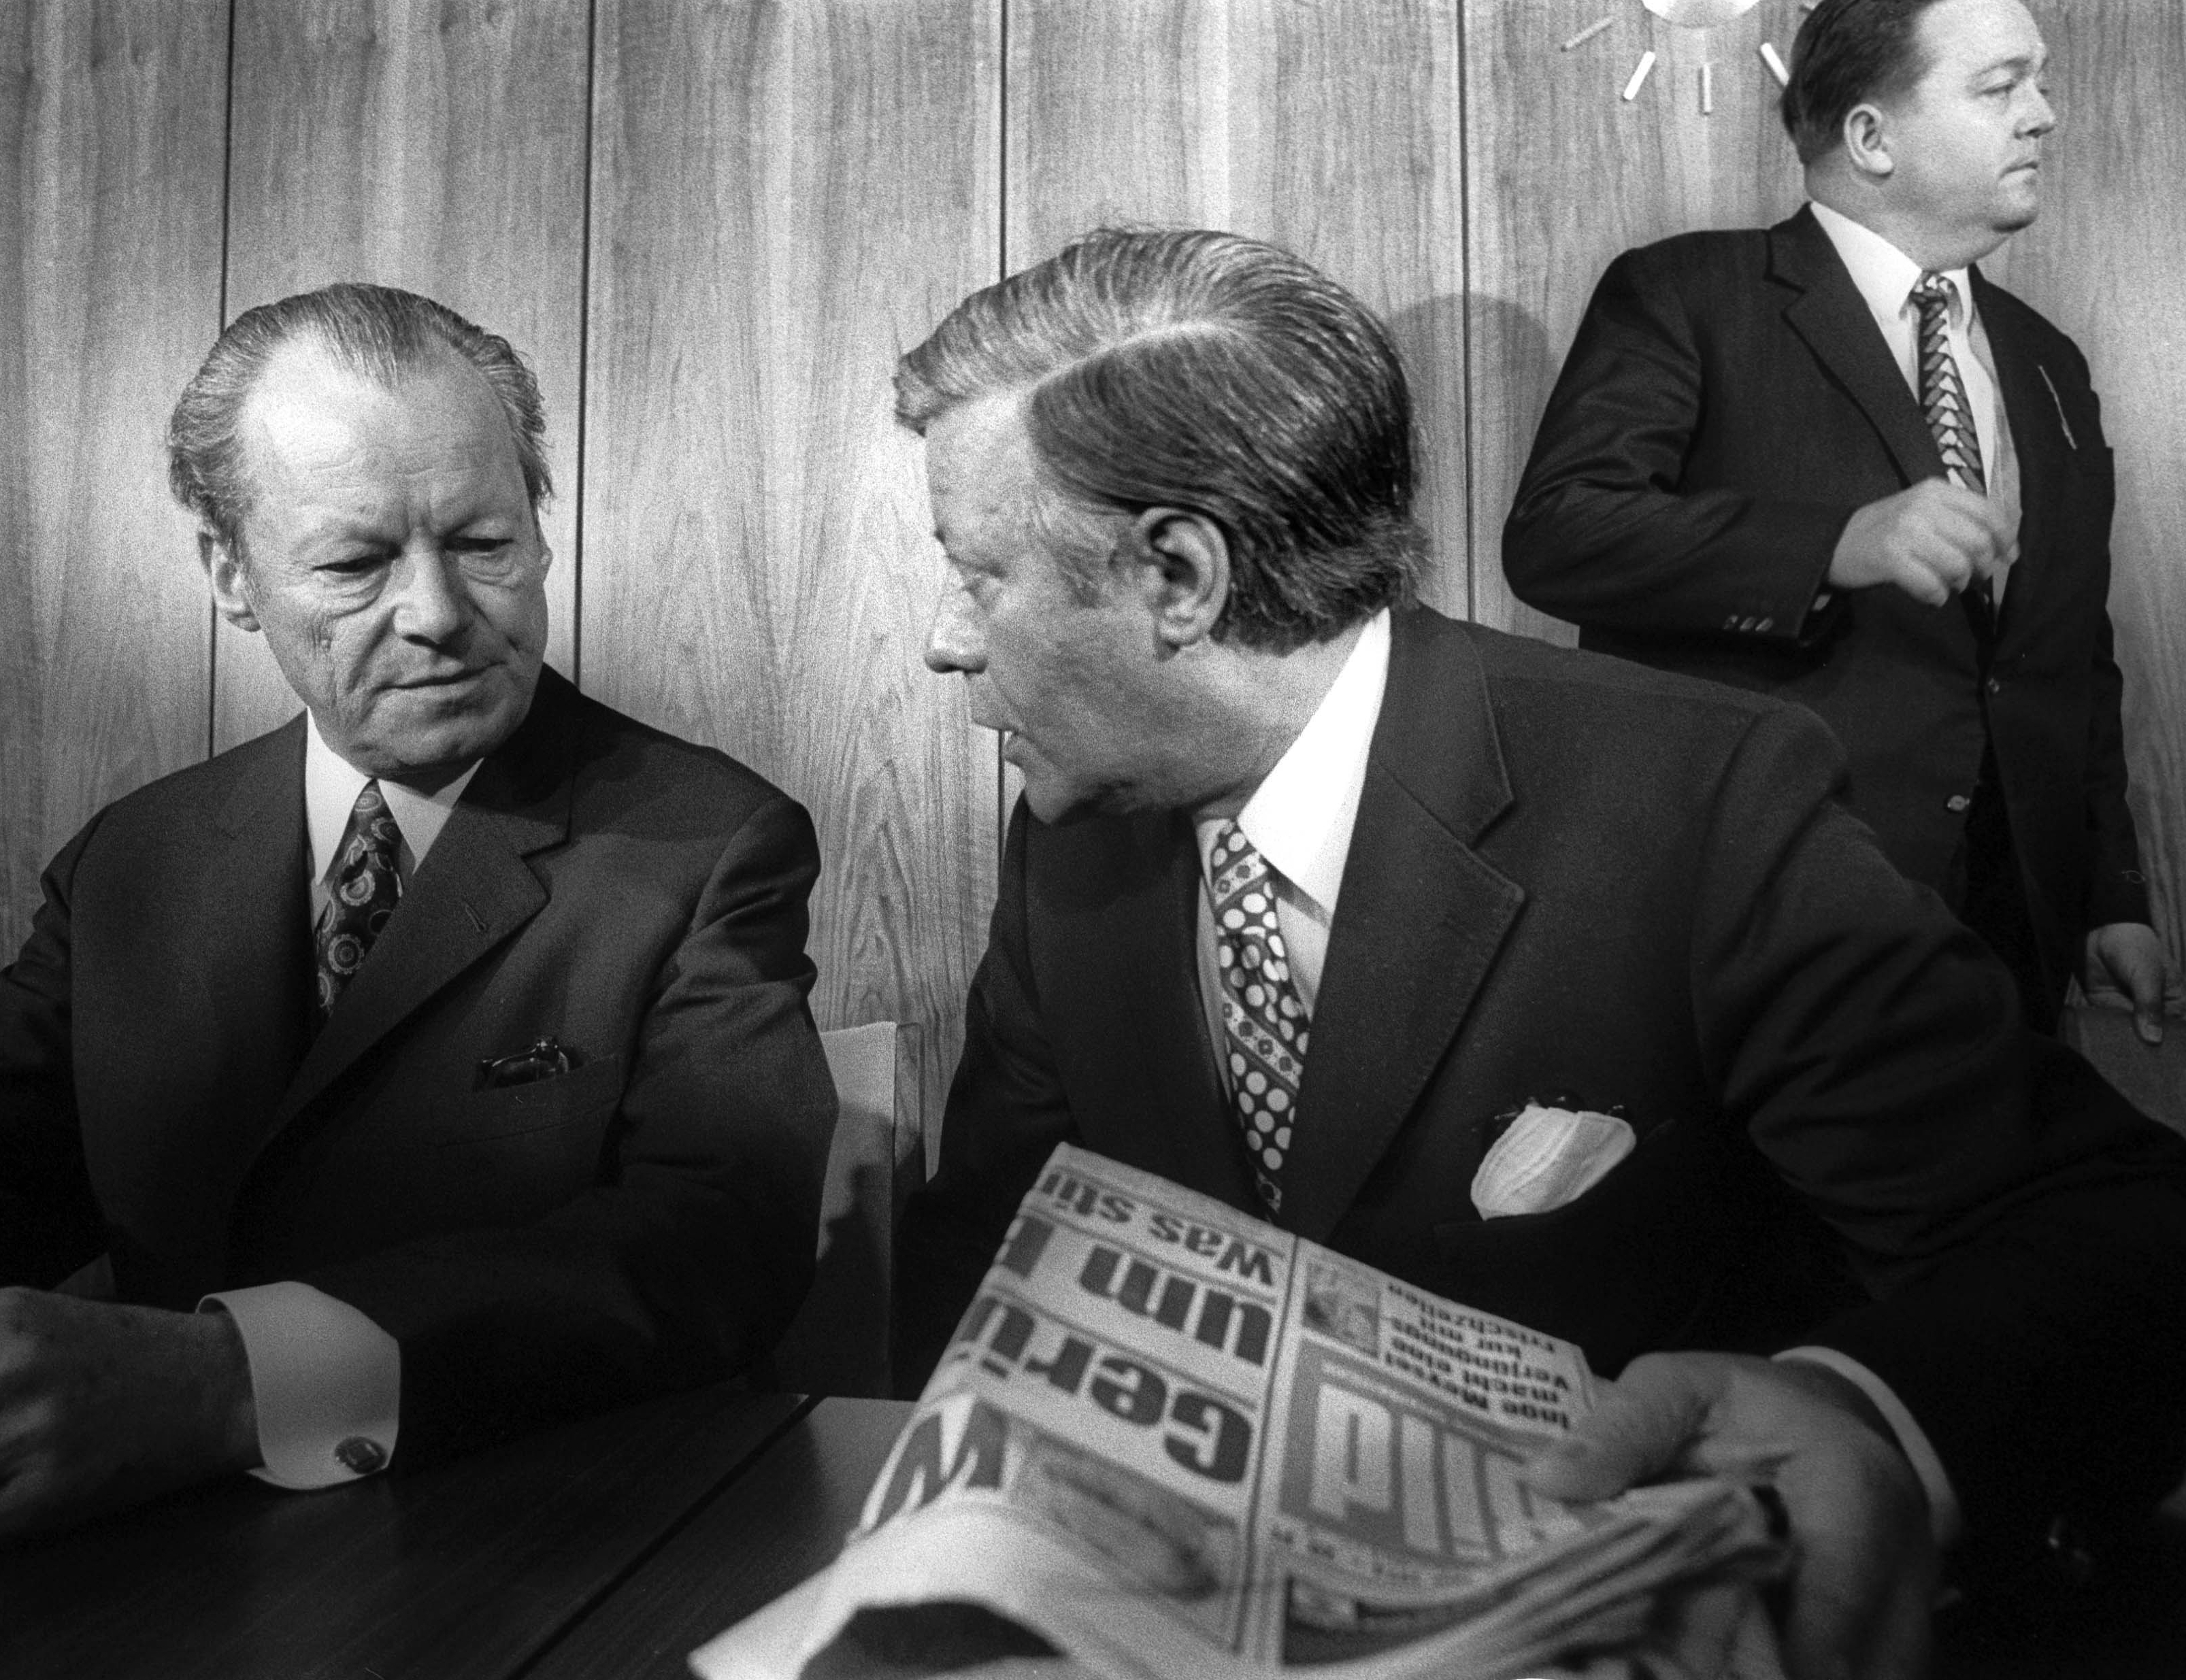 Helmut Schmidt und Willy Brandt, im Hintergrund Holger Börner stehend